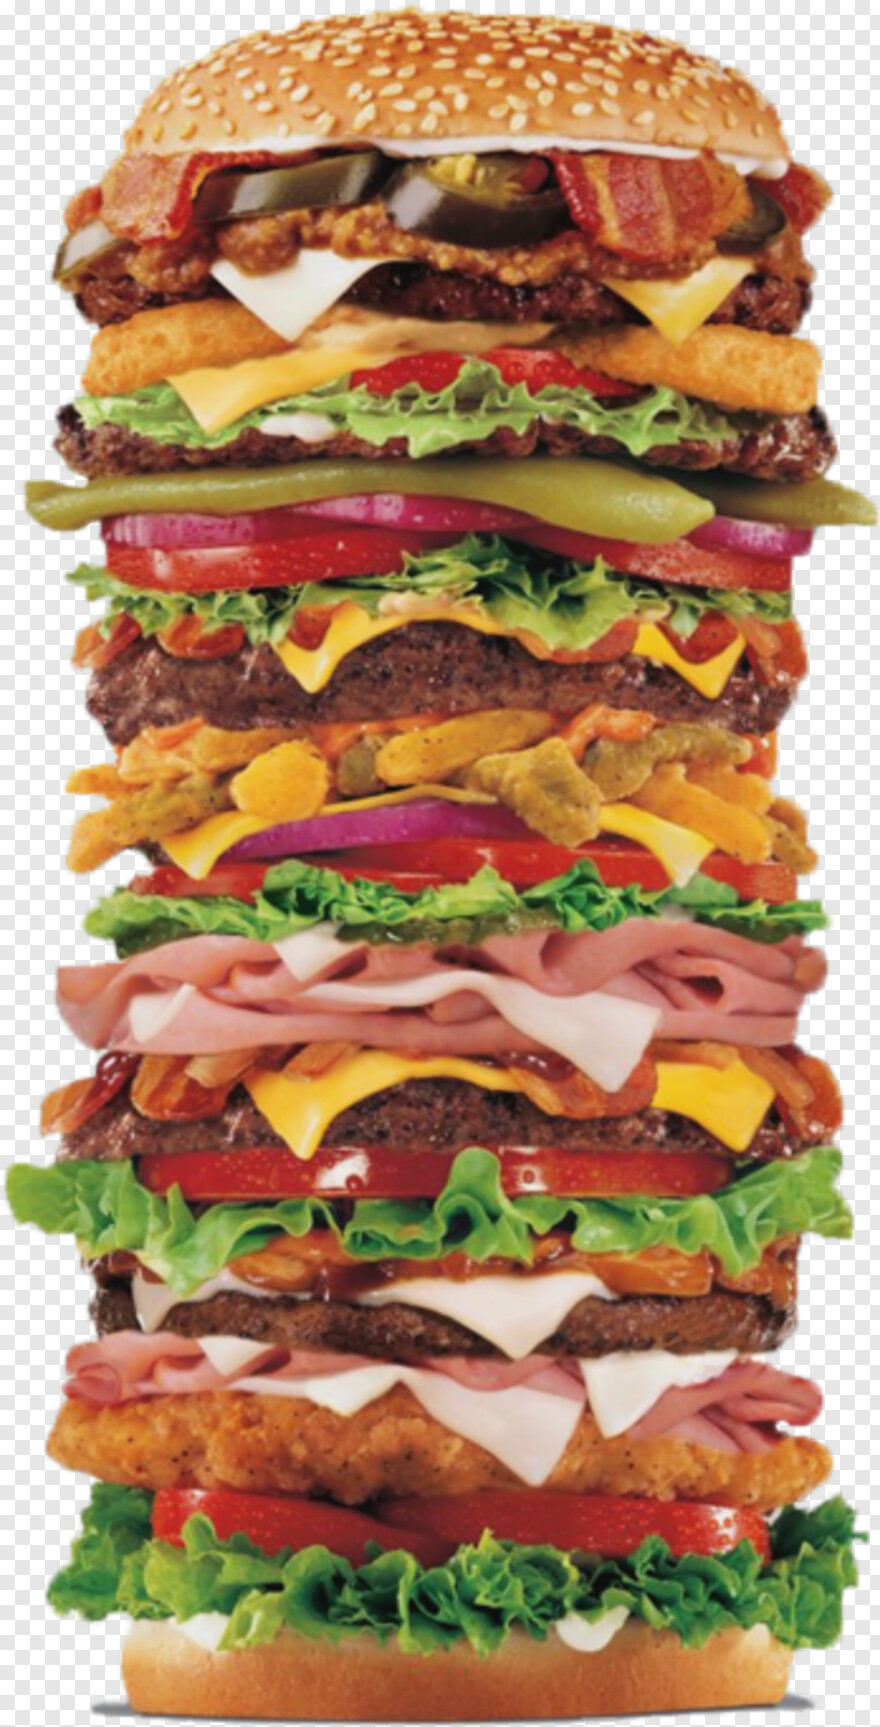 hamburger # 364701